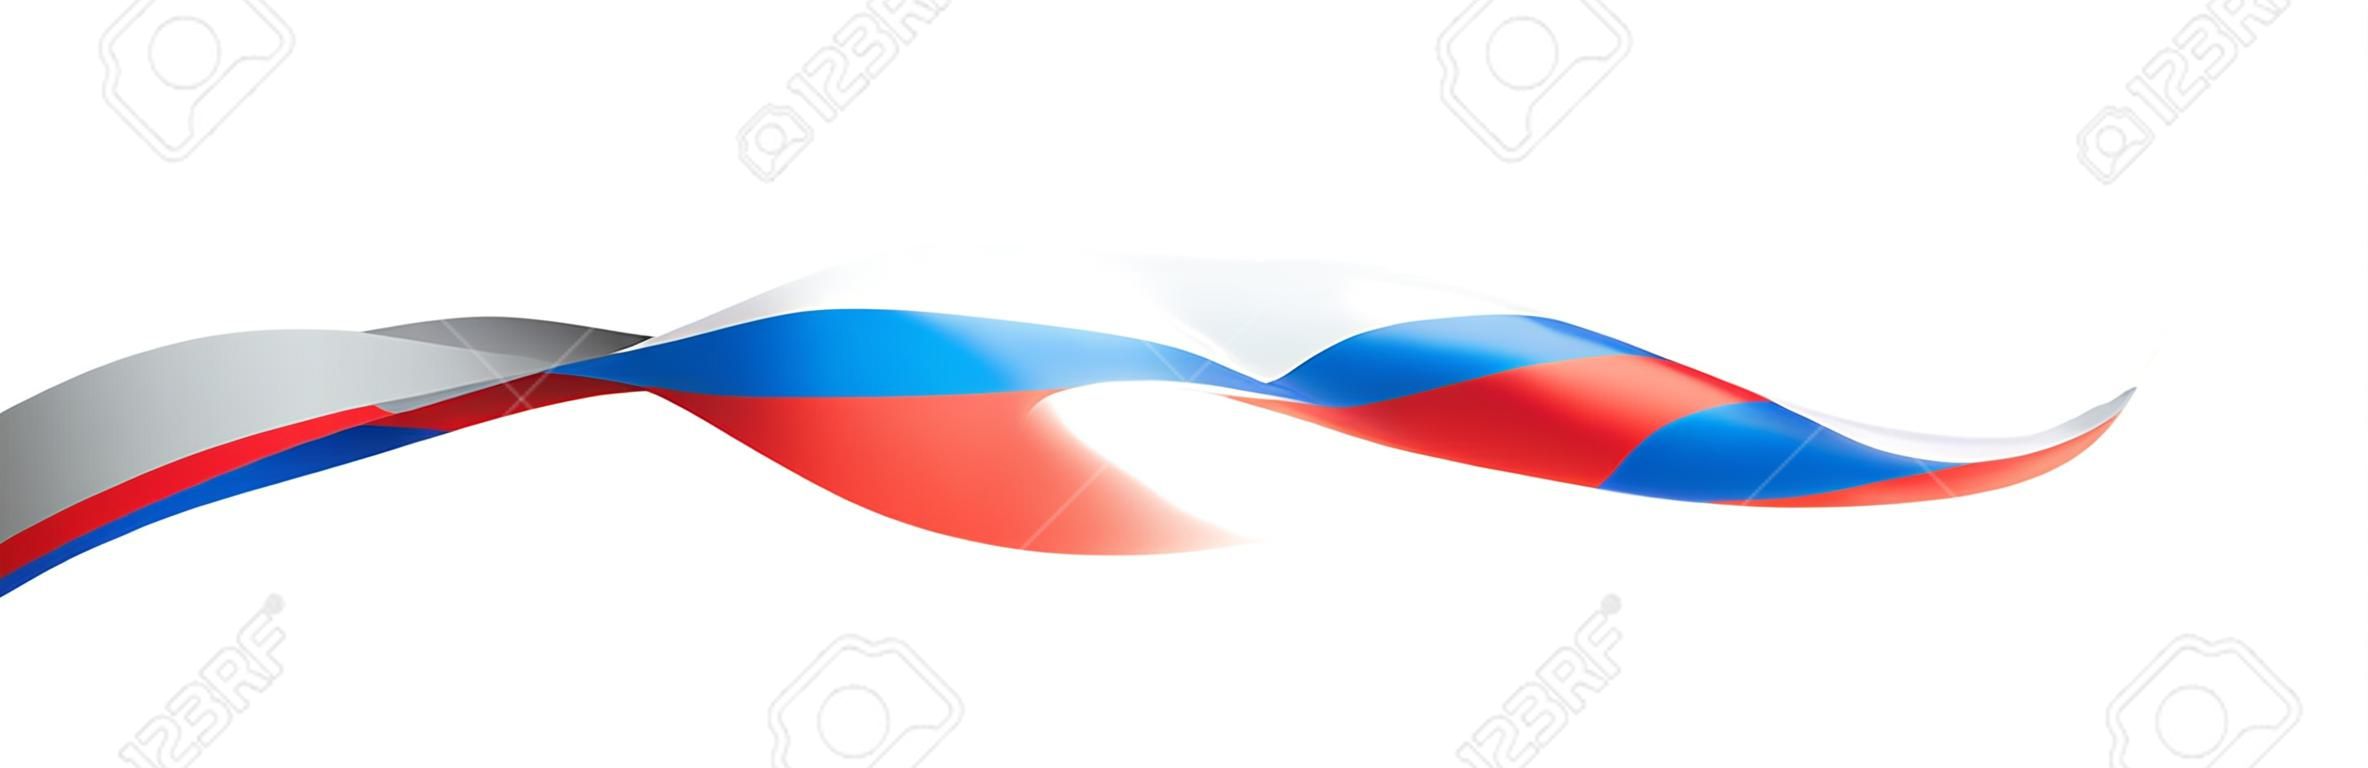 Drapeau de la Russie, illustration vectorielle sur fond blanc.